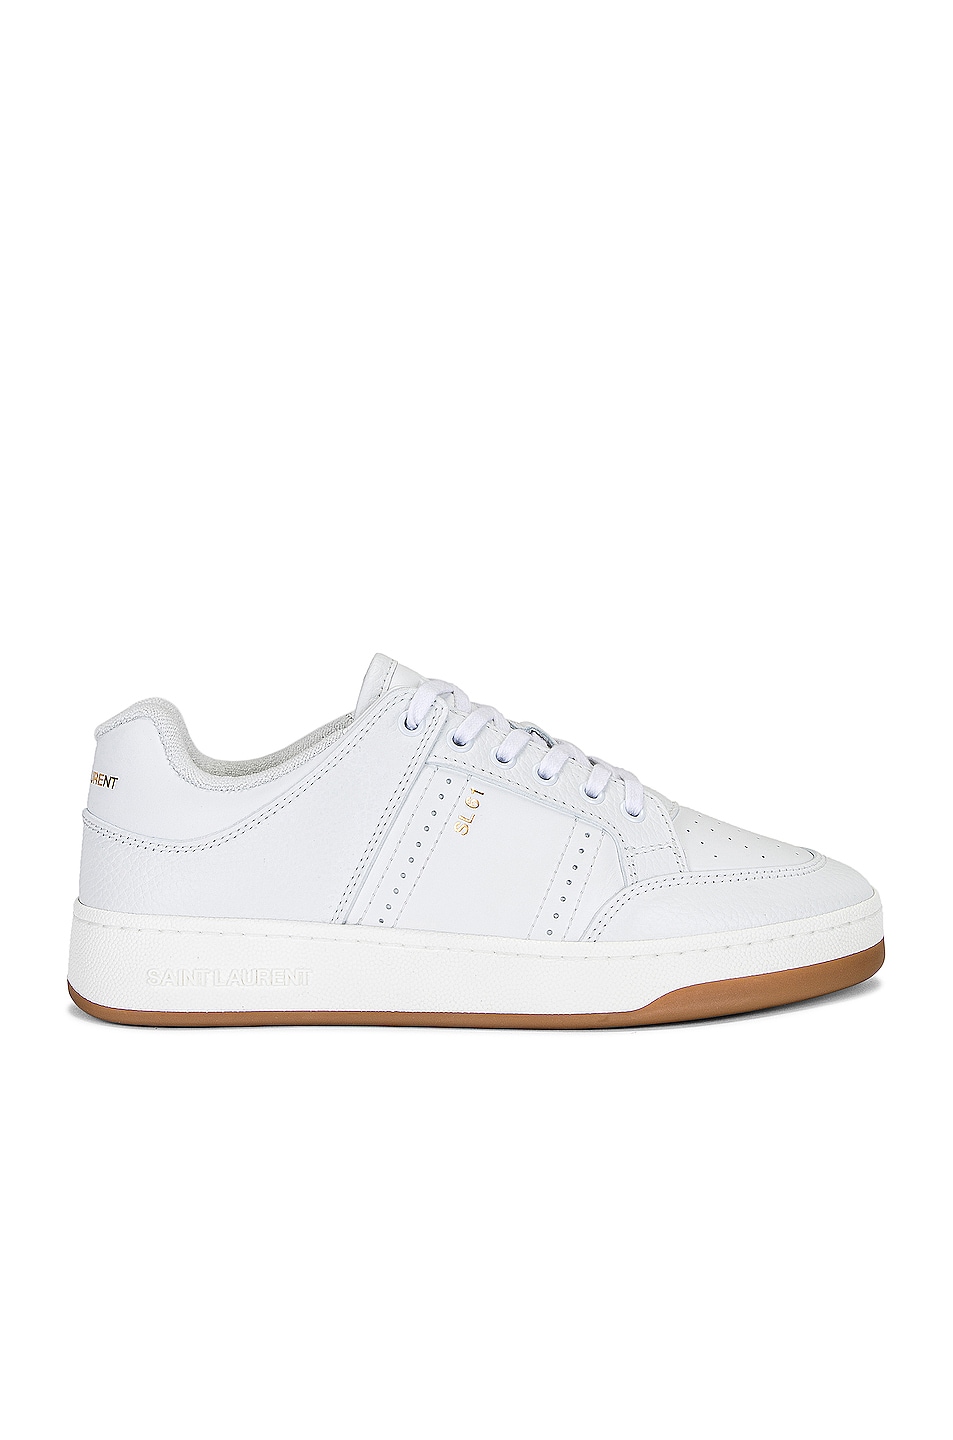 Image 1 of Saint Laurent SL 61 Sneakers in K White & K White